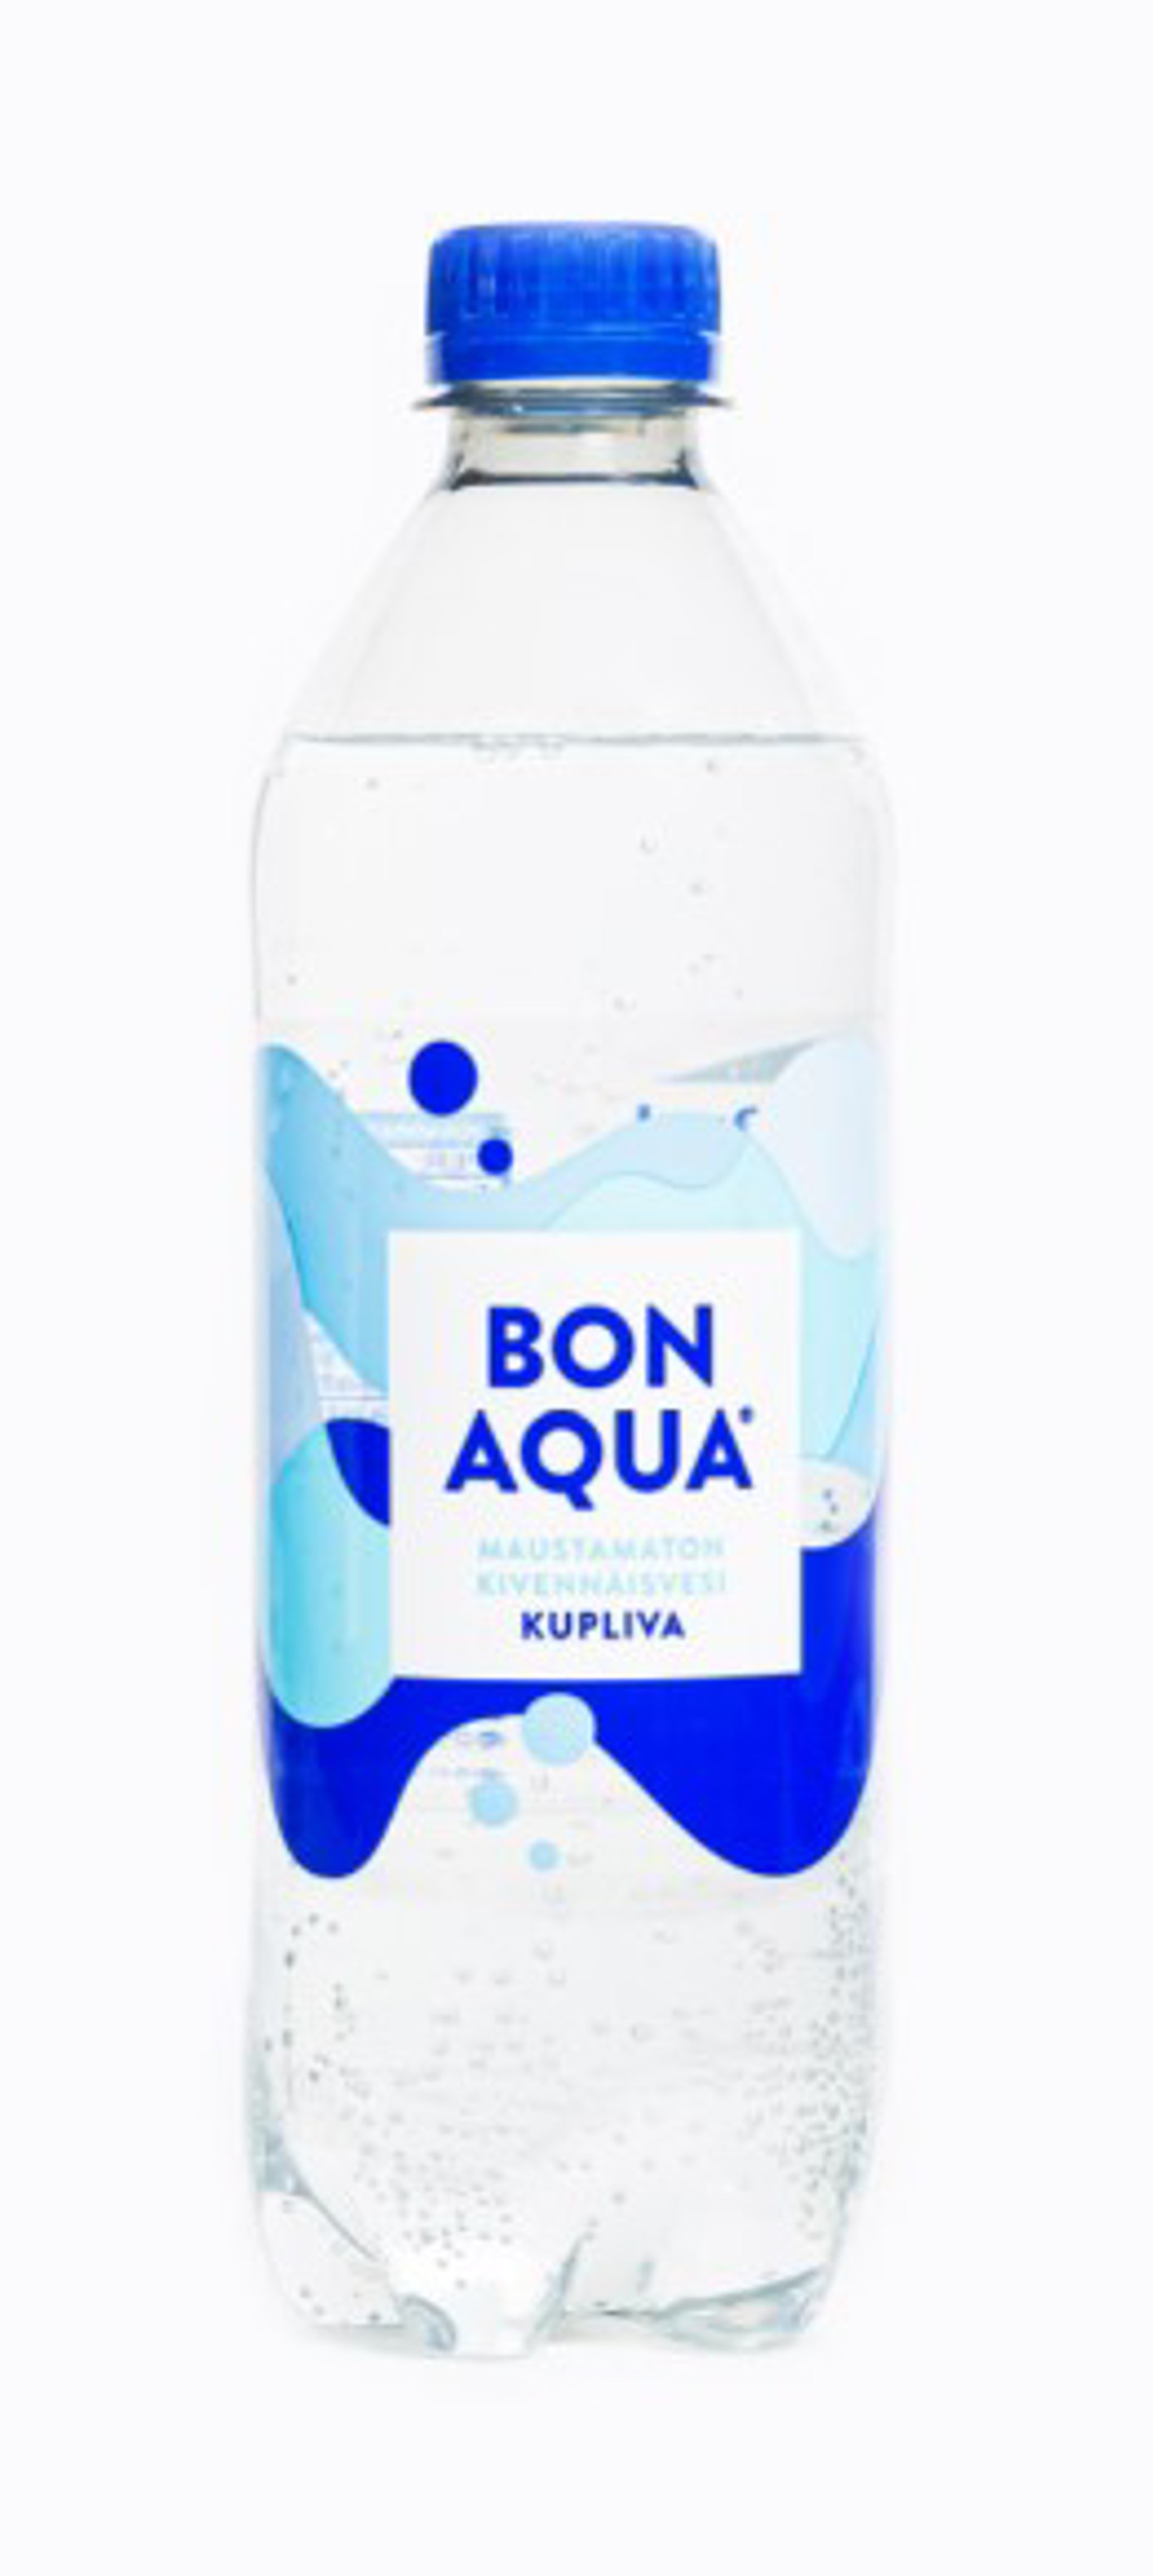 100 % kierrätysmuovista valmistettu Bonaqua-kierrätysmuovipullo.